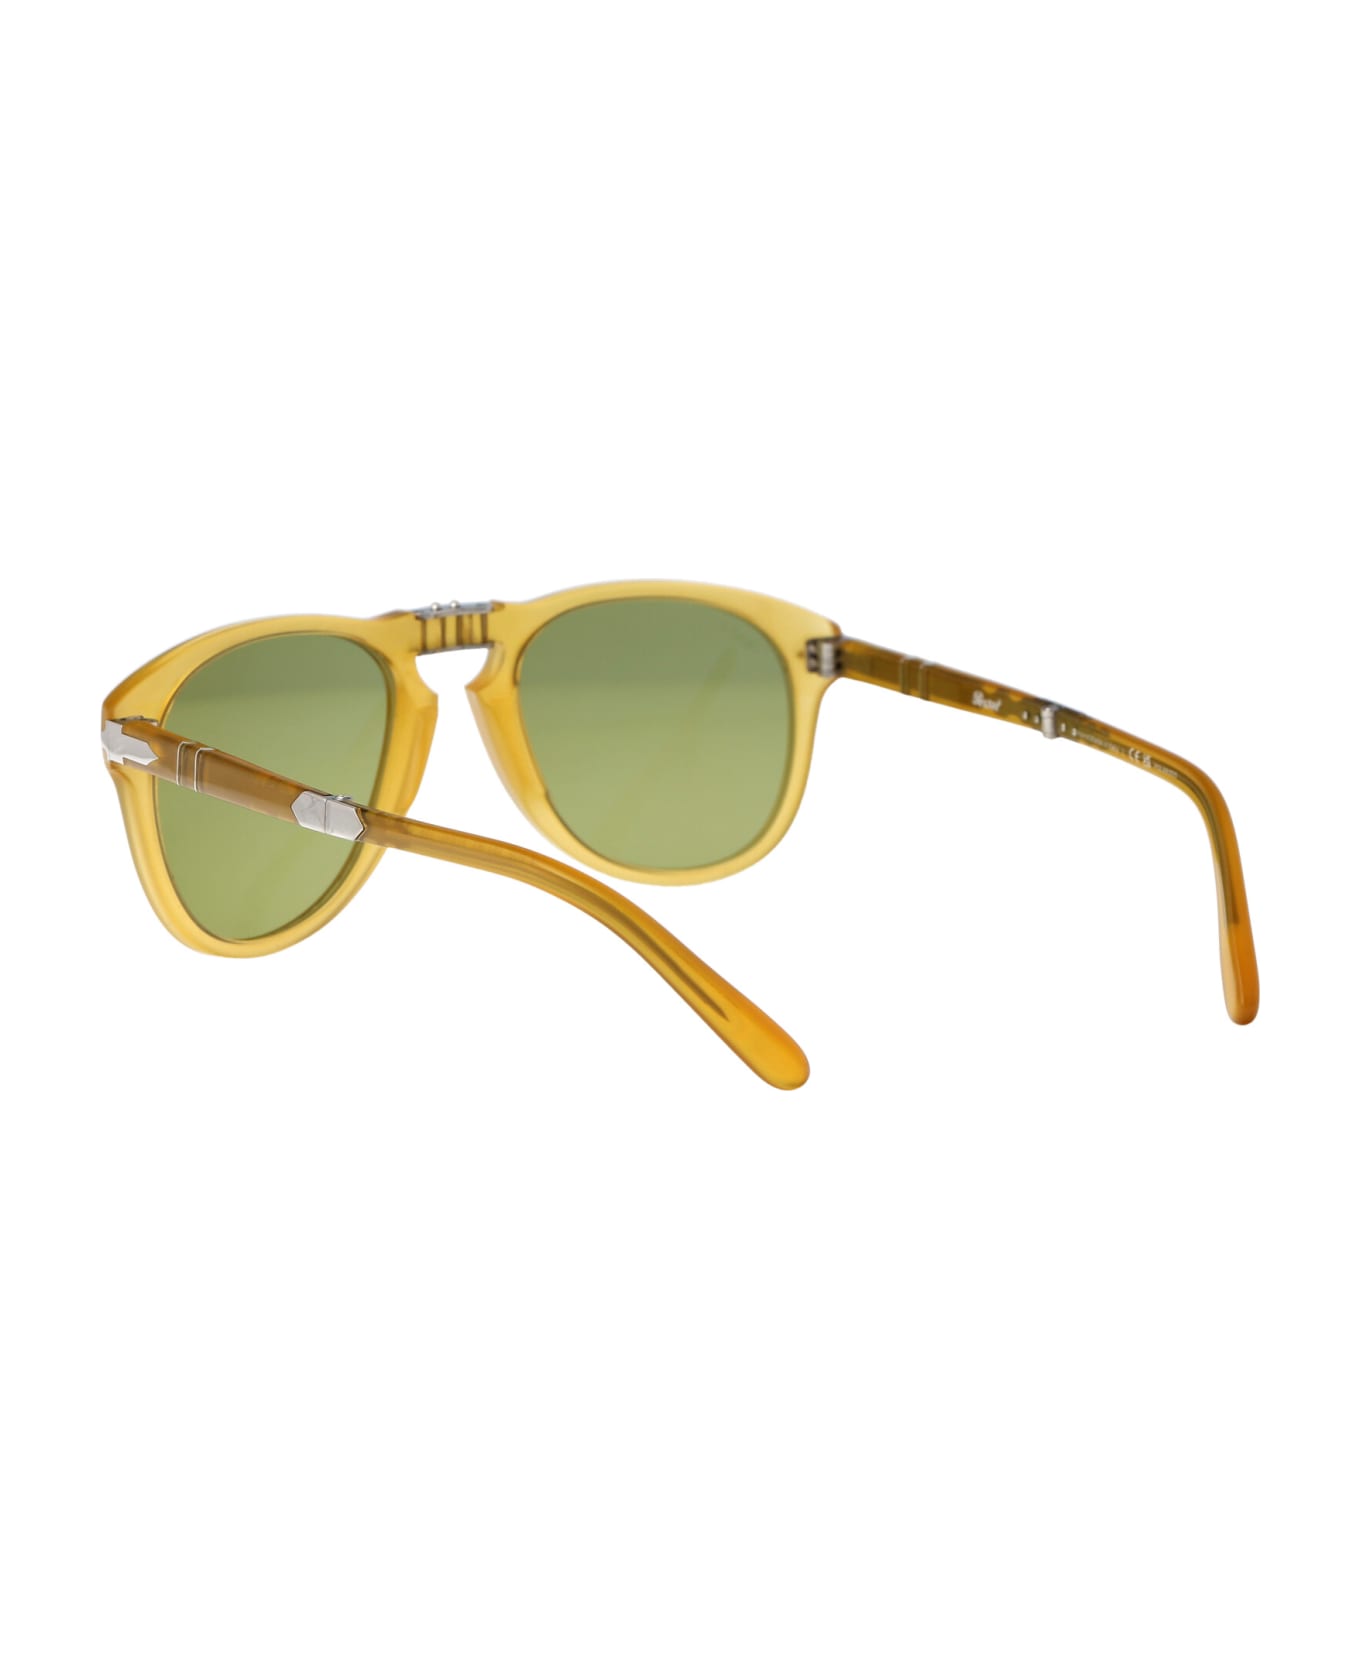 Persol Steve Mcqueen Sunglasses - 204/P1 OPAL YELLOW PLAR GREEN